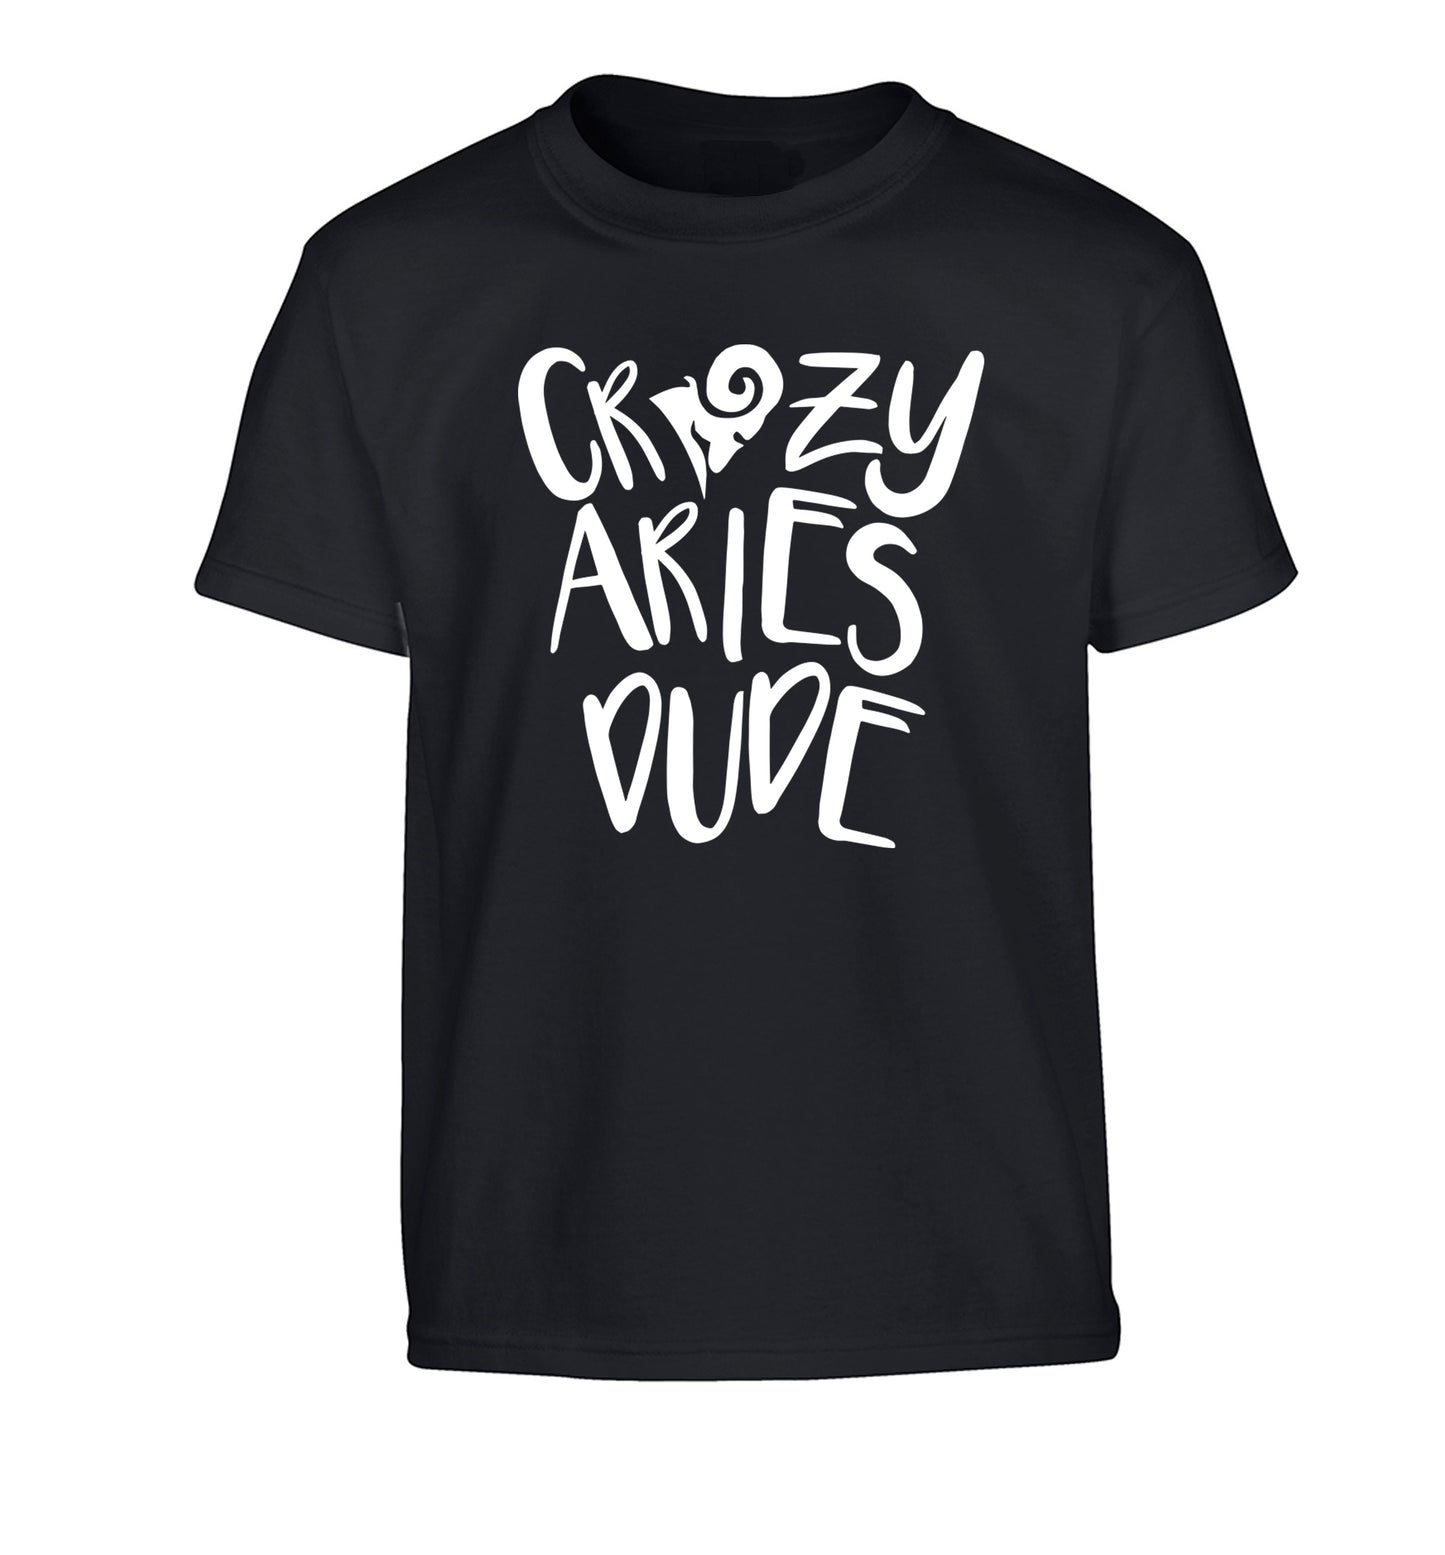 Crazy aries dude Children's black Tshirt 12-13 Years